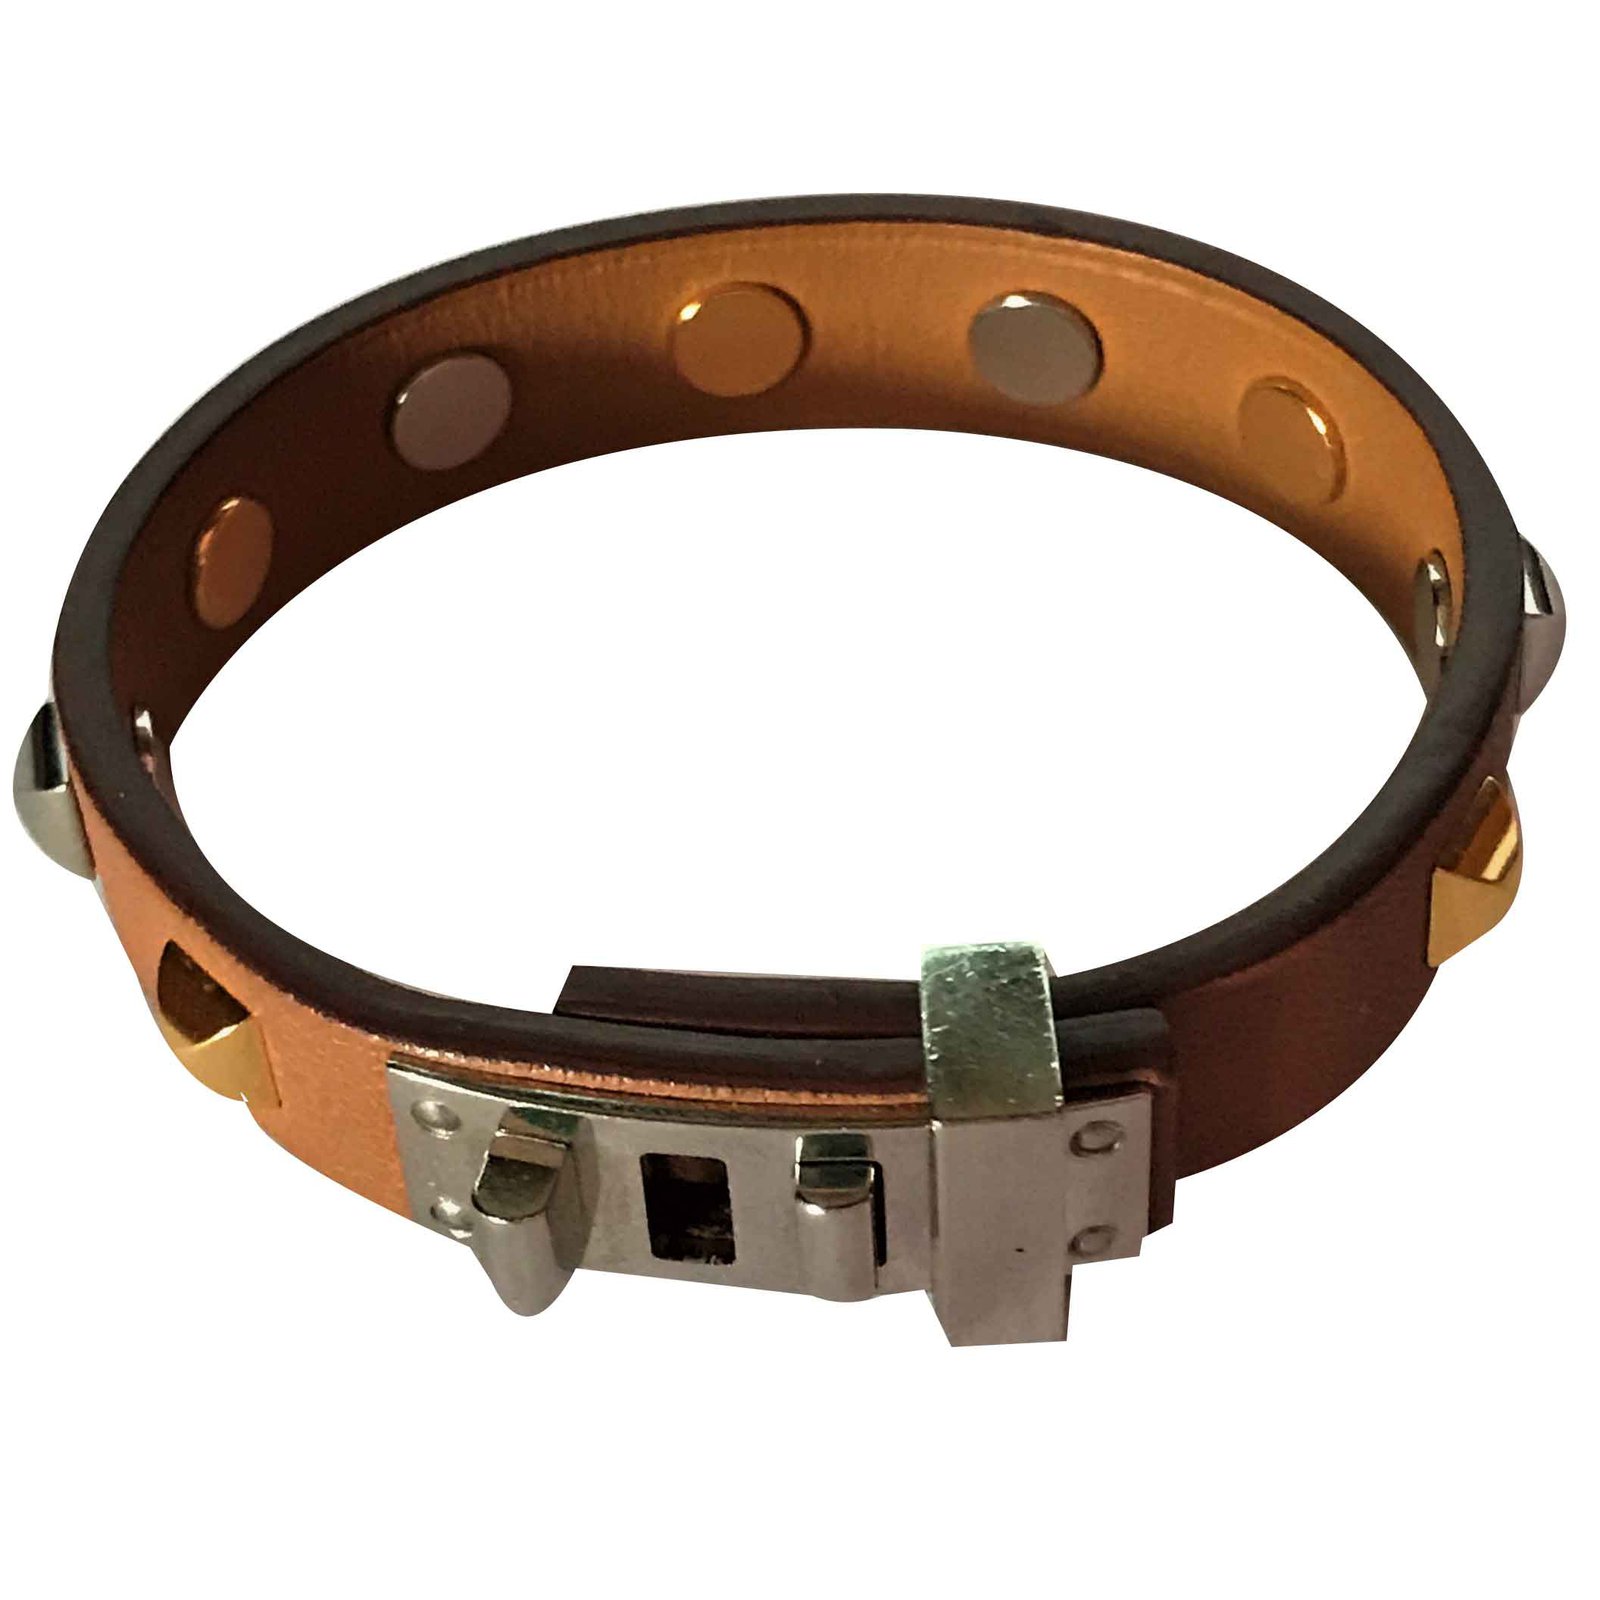 hermes mini dog bracelet